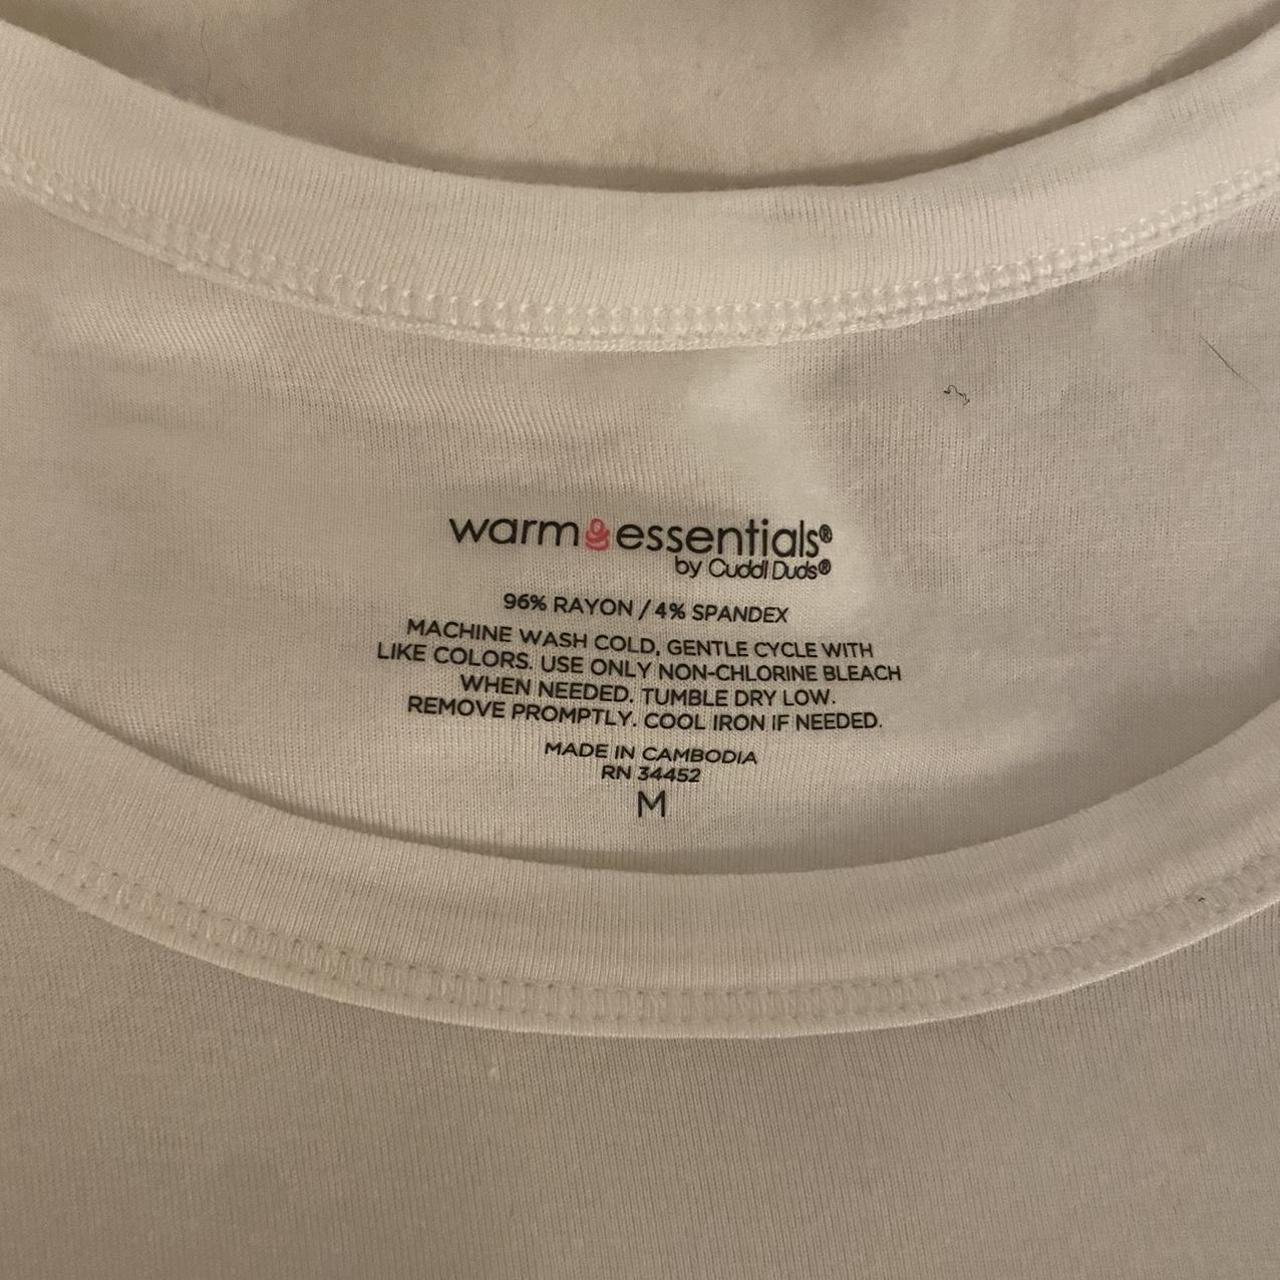 Cuddl Duds Women's White and Cream Vest-undershirts (3)